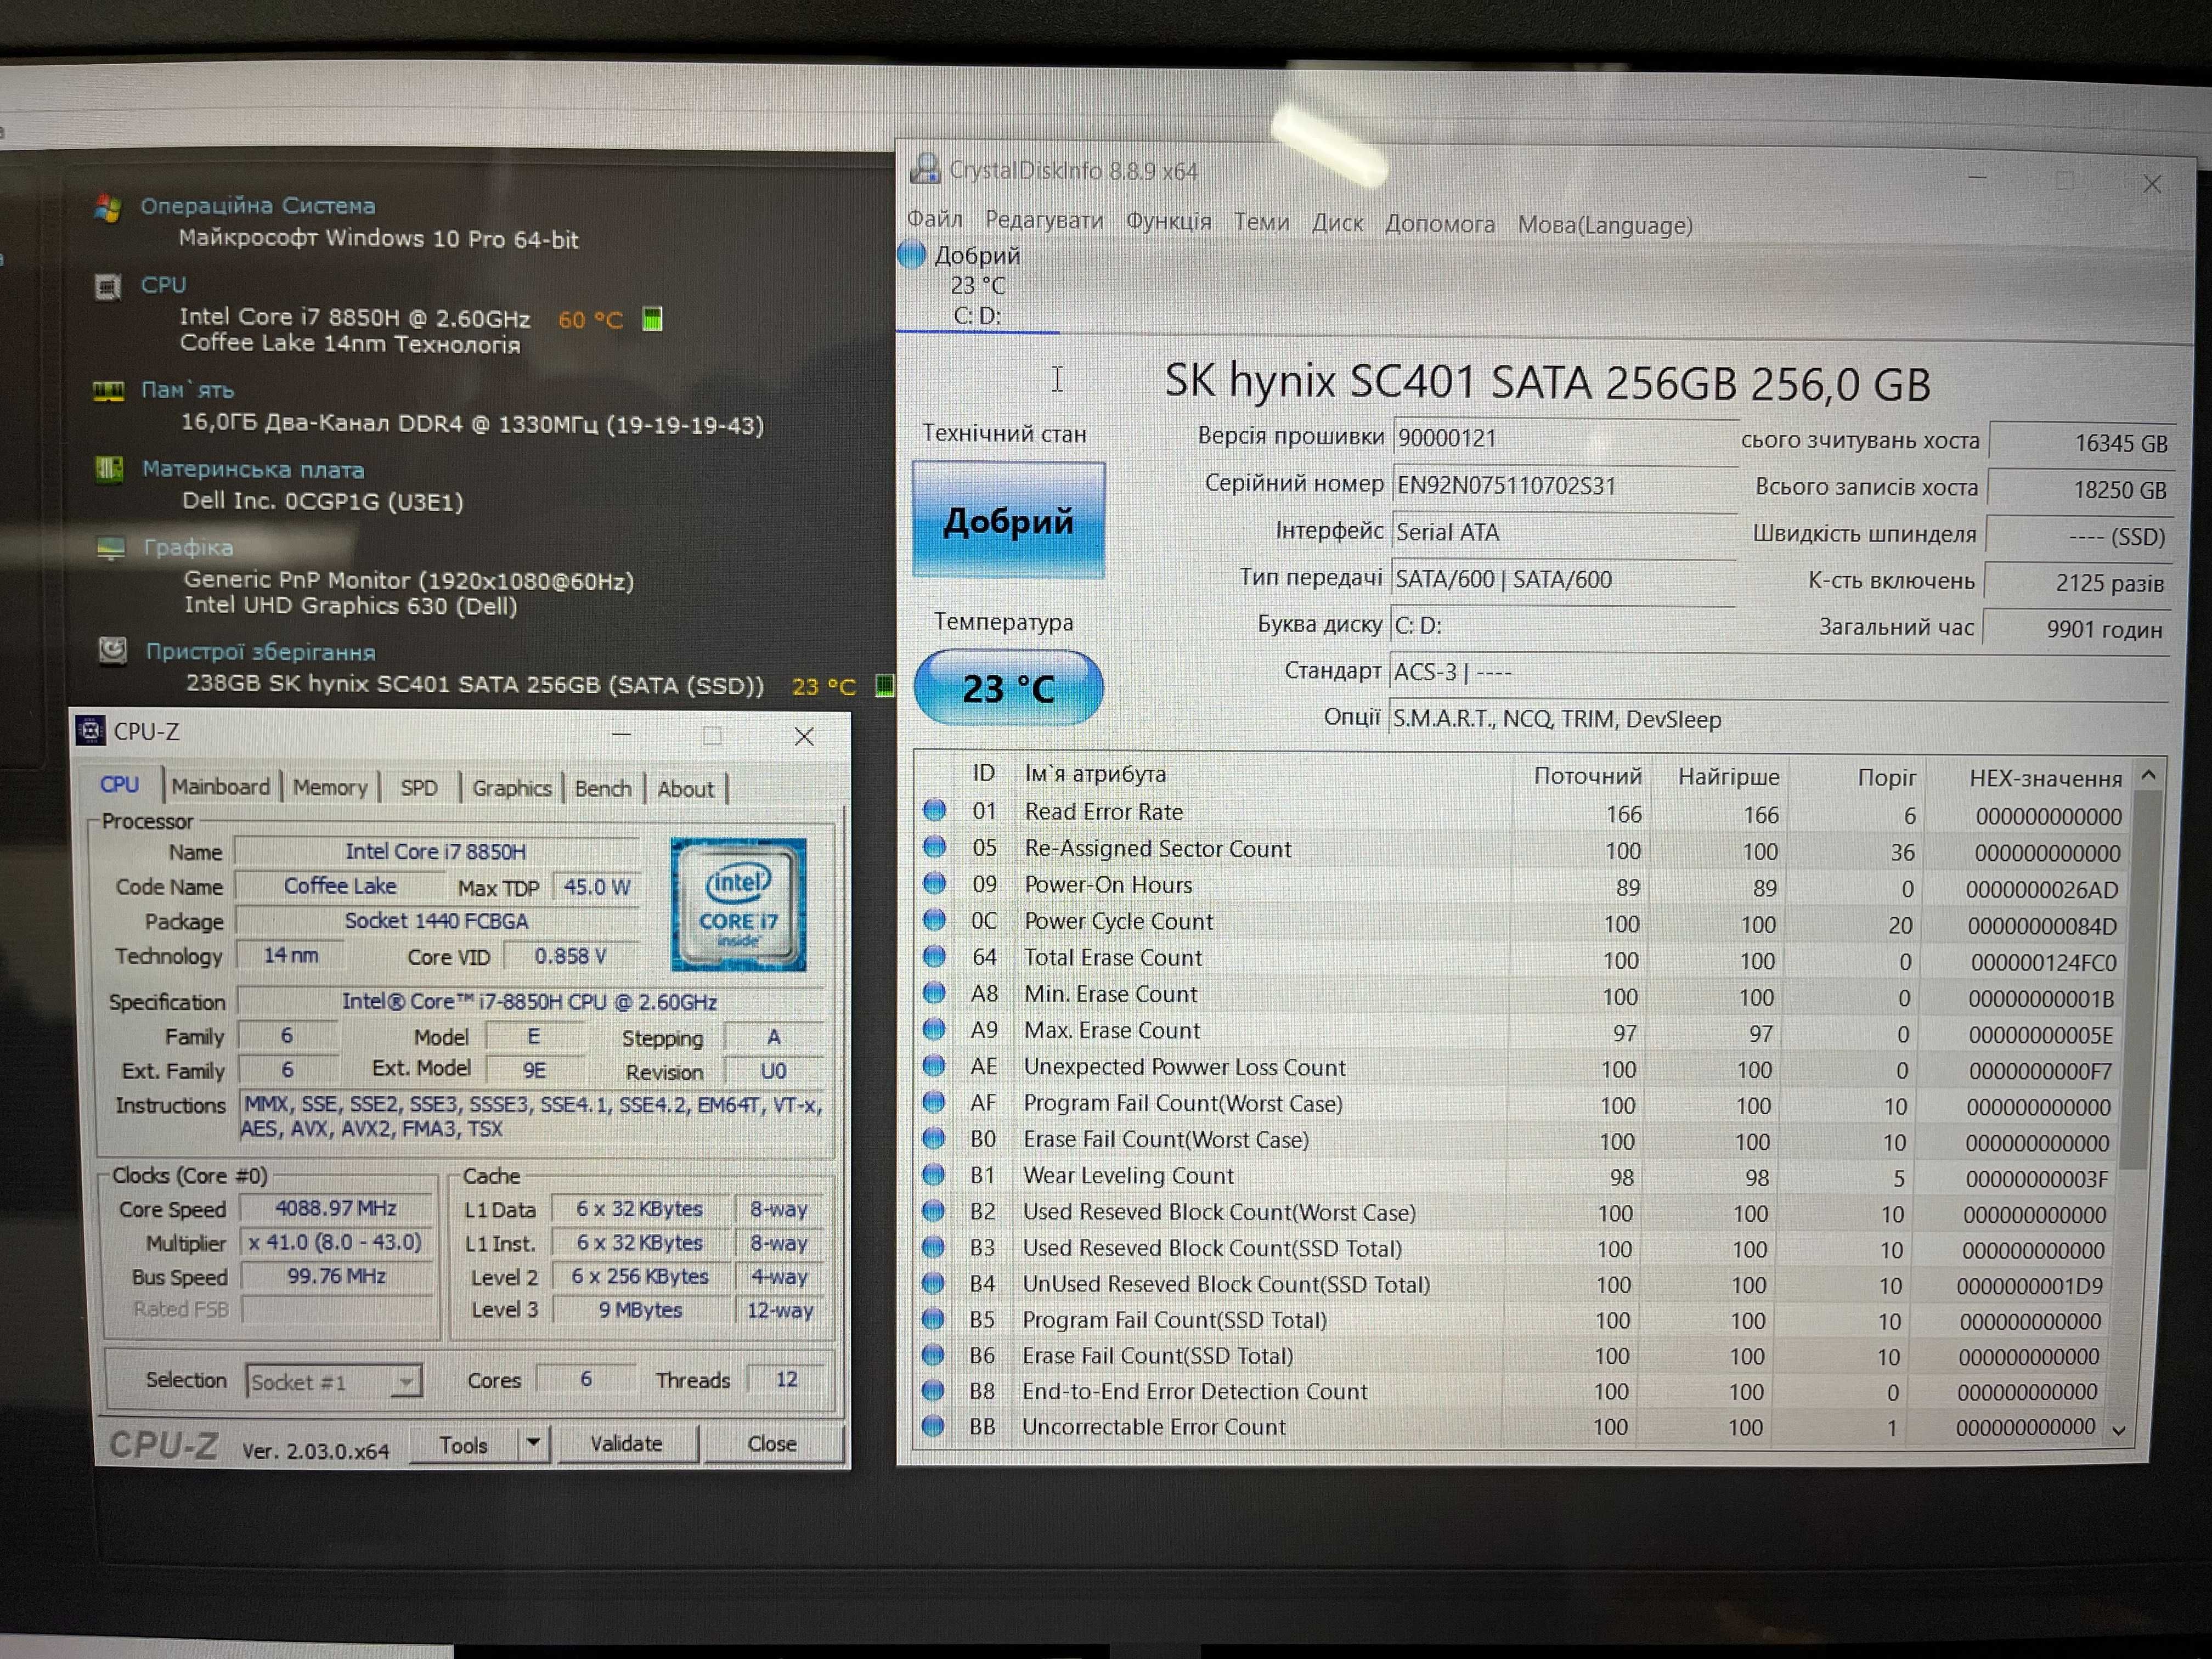 Dell Latitude 5591/Intel core i7-8850H/16GB/SSD 256GB/15.6" FHD, Touch